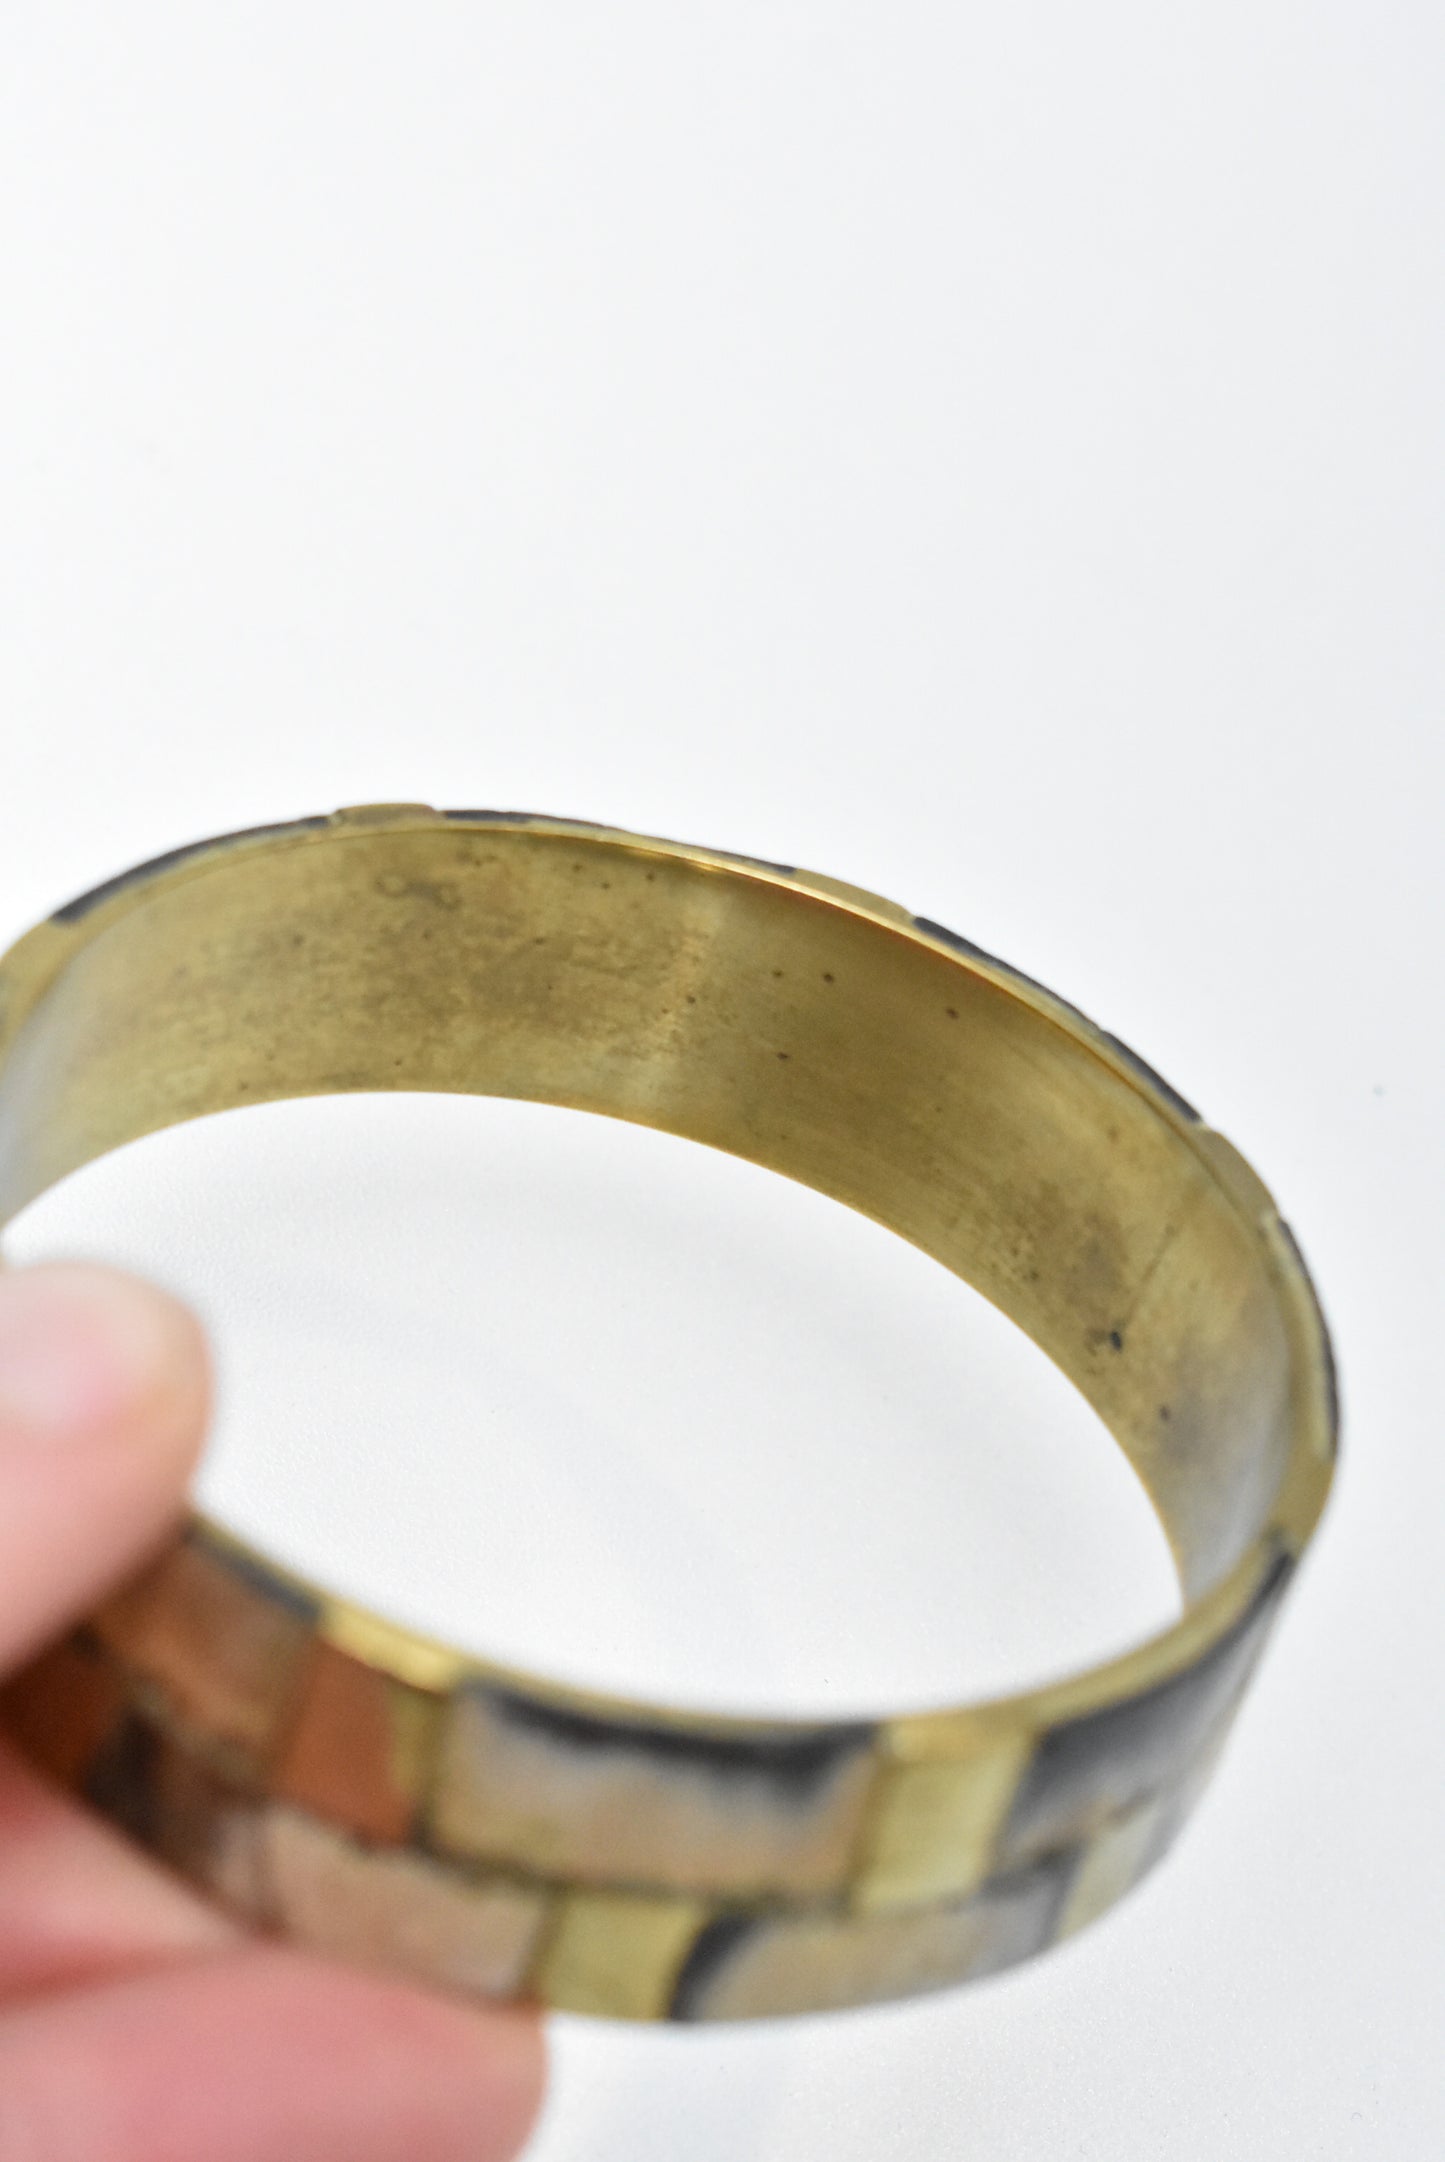 Bone and brass inlaid bracelet